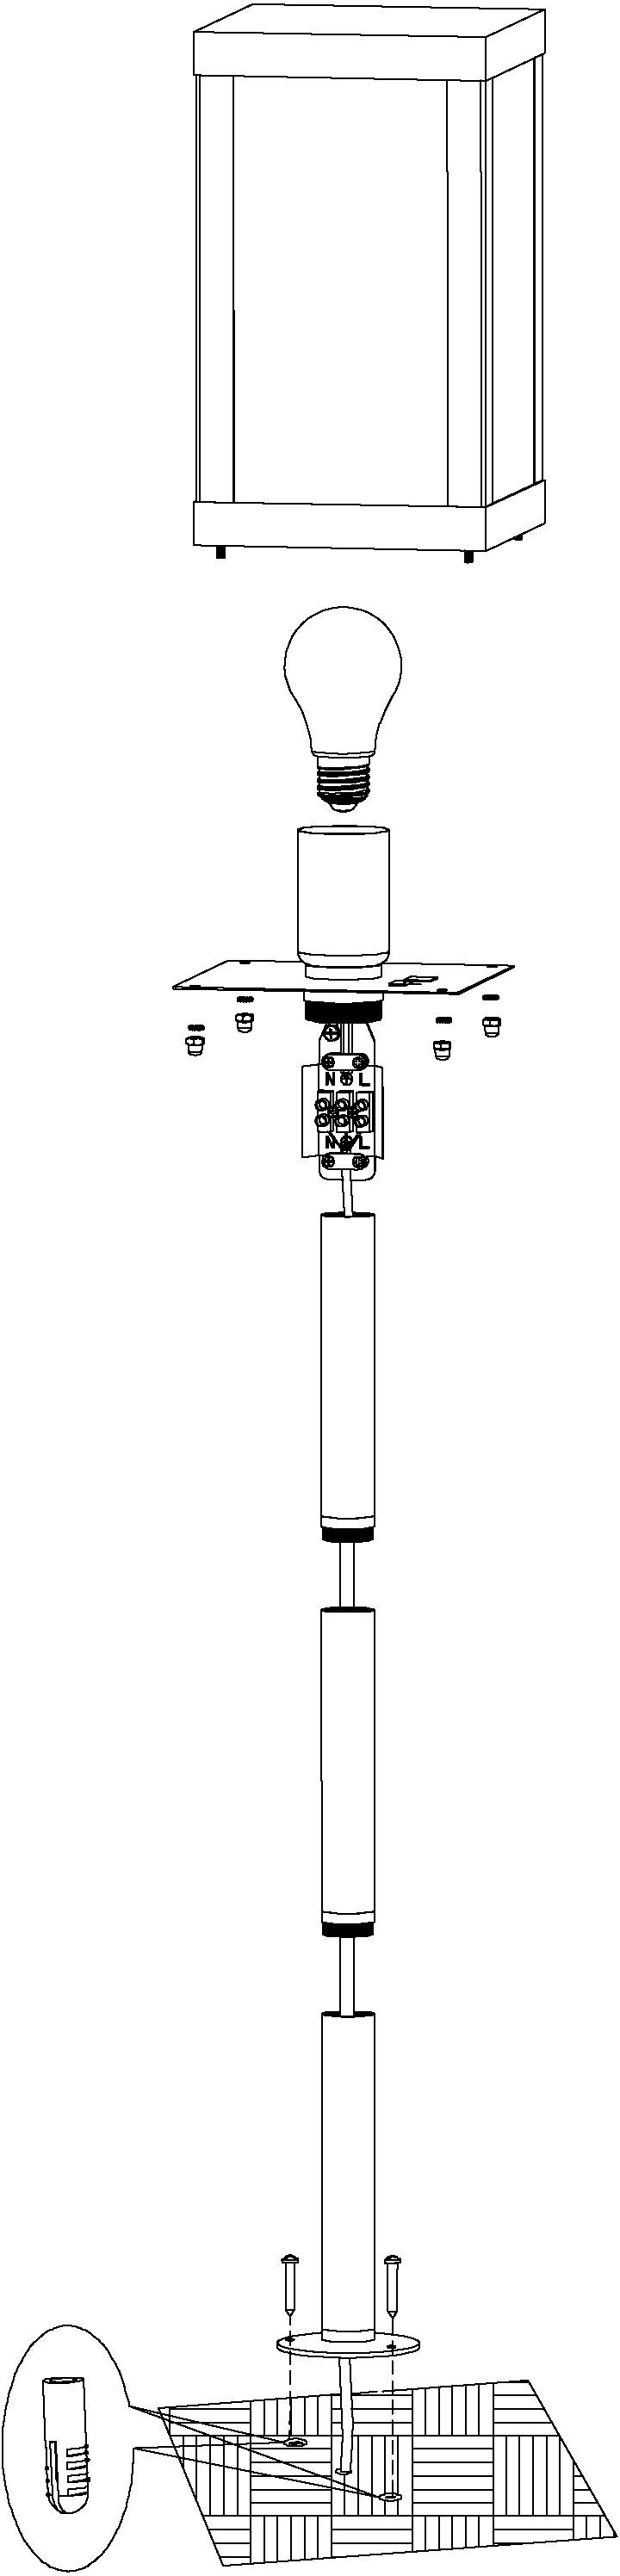 ALAMONTE x / B15 1, / x schwarz Leuchtmittel, Rustikal EGLO cm spritzwassergeschützt / Außen-Stehlampe L15 H101,5 ohne